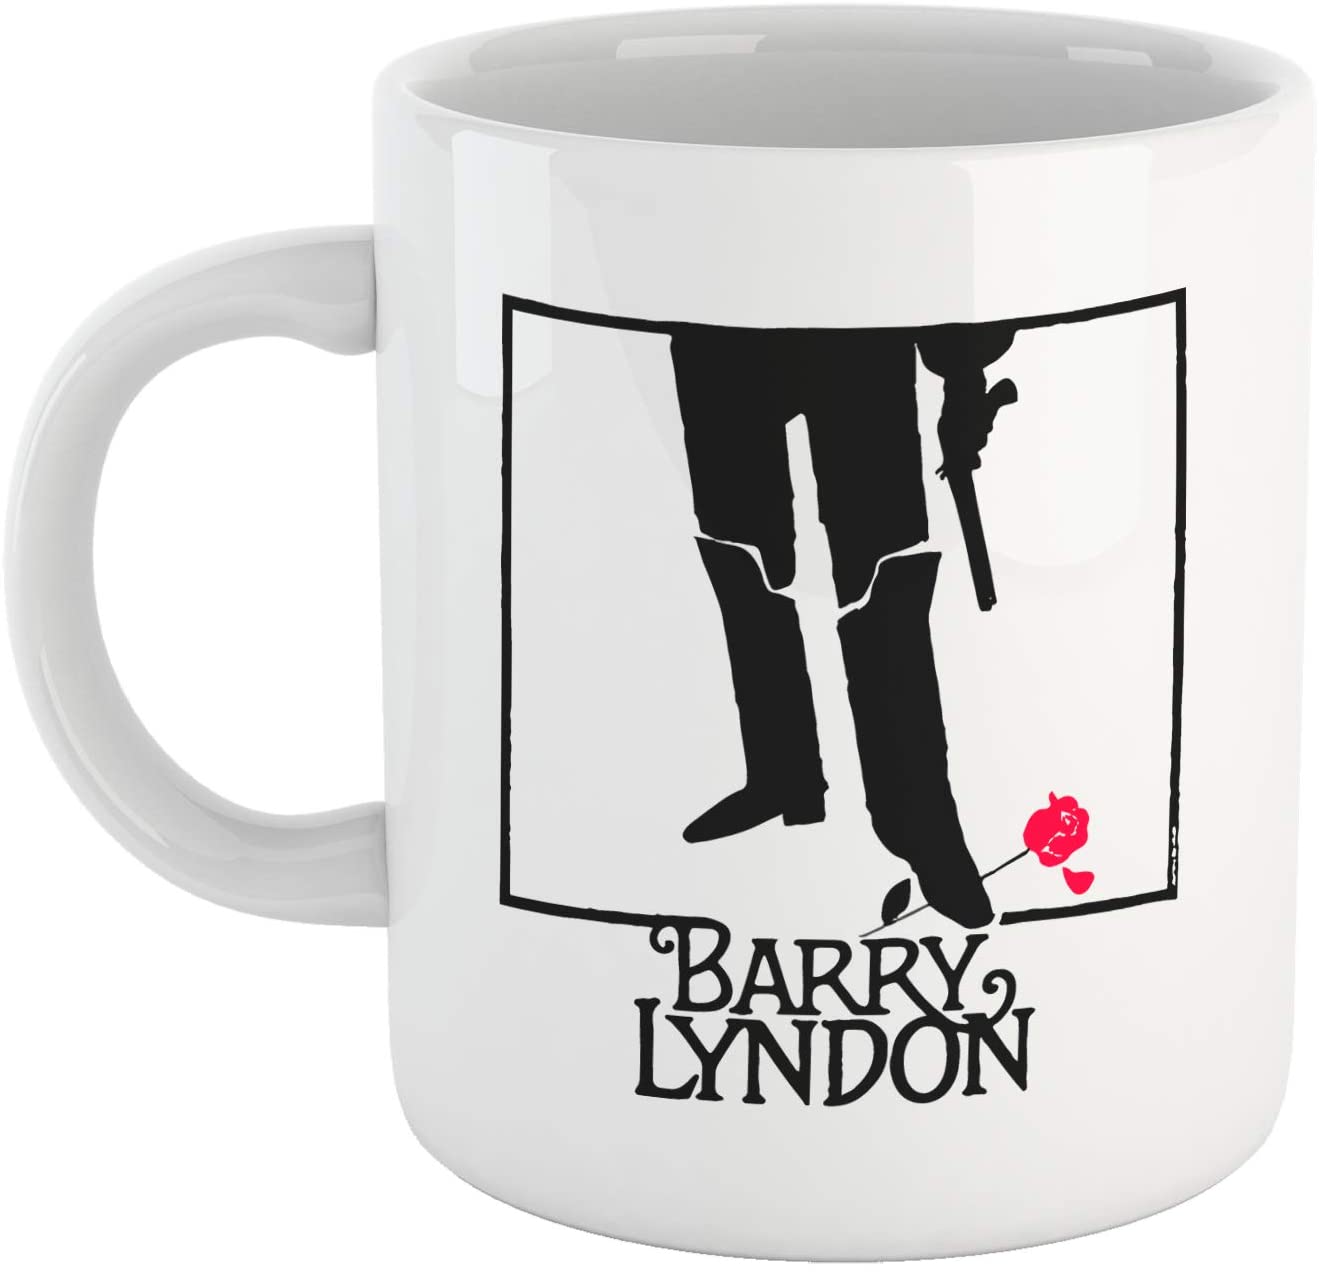 Lavender Tazza Barry Lyndon - Mug Personalizzata sul Film di Kubrick - Choose Ur Color Cuc shop